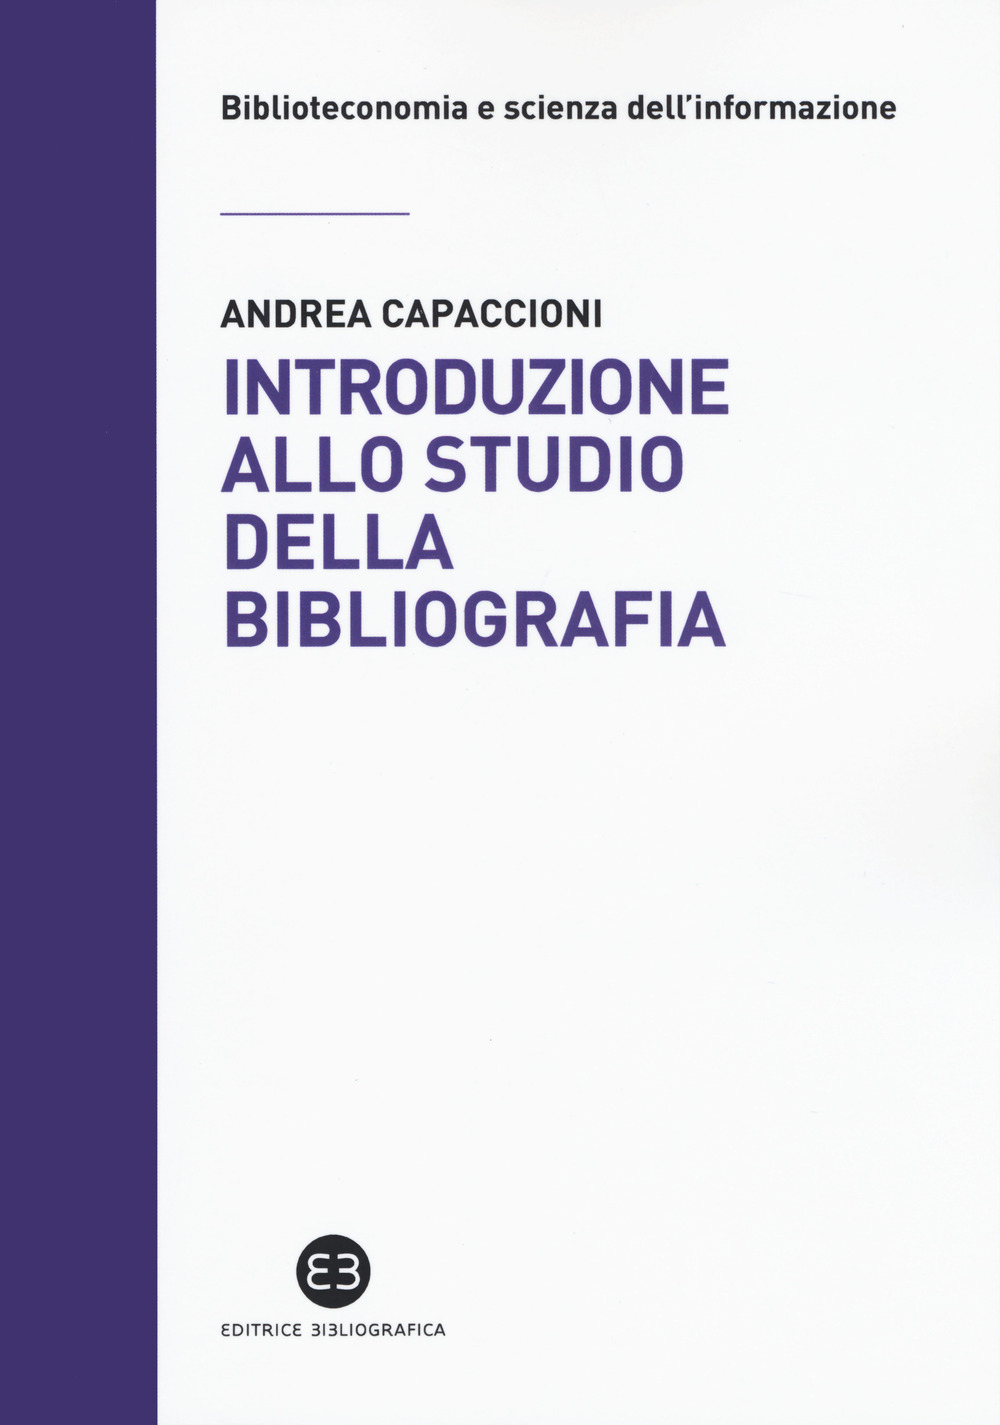 Libri Andrea Capaccioni - Introduzione Allo Studio Della Bibliografia NUOVO SIGILLATO, EDIZIONE DEL 30/01/2020 SUBITO DISPONIBILE